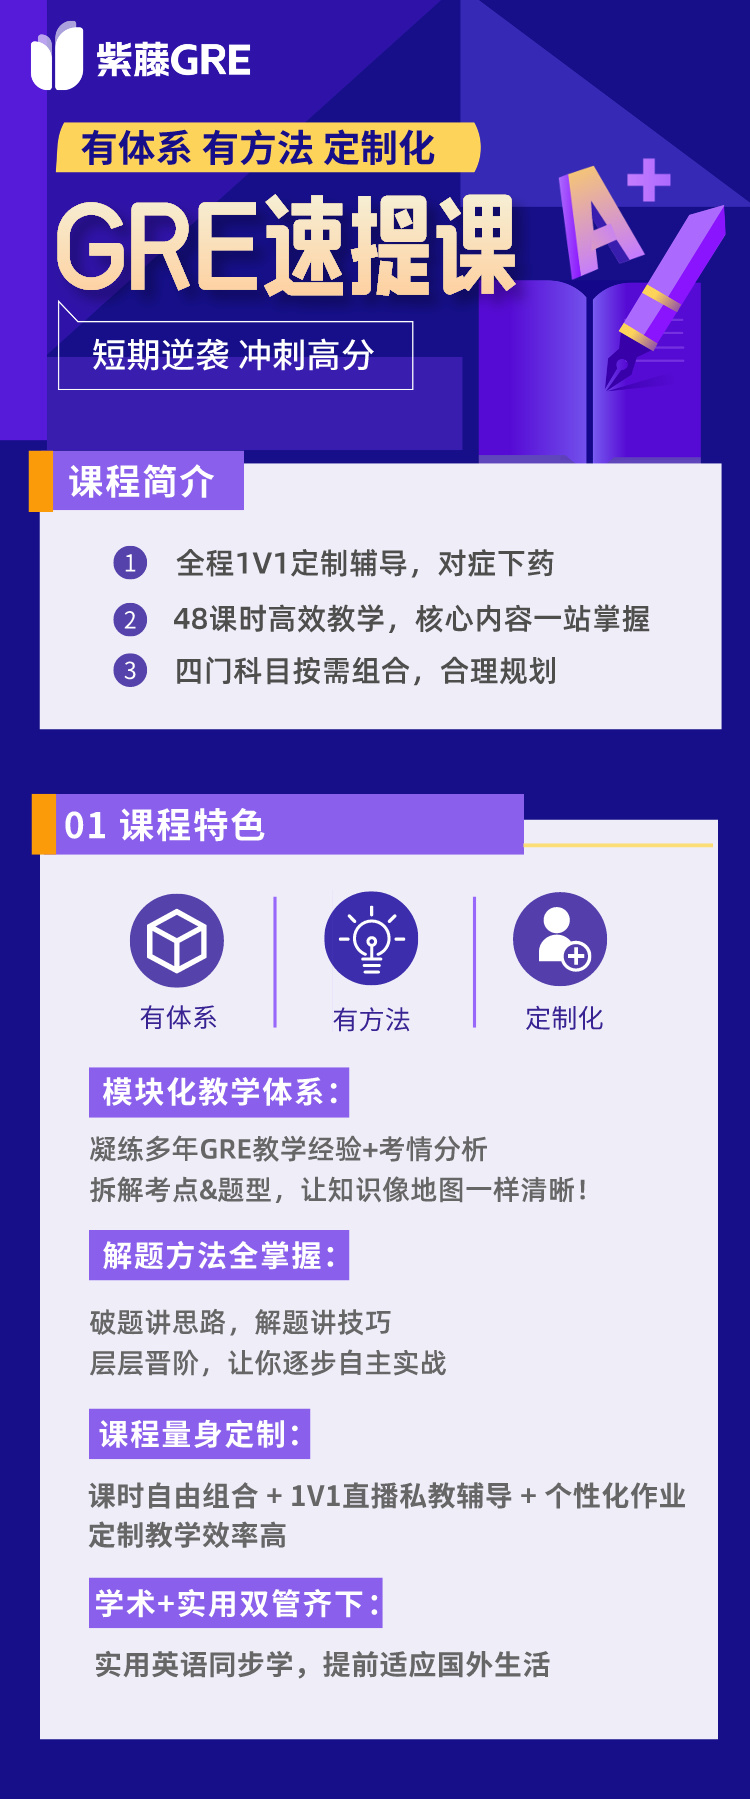 https://simg01.gaodunwangxiao.com/uploadfiles/product-center/202403/19/b2d5a_20240319170705.jpeg